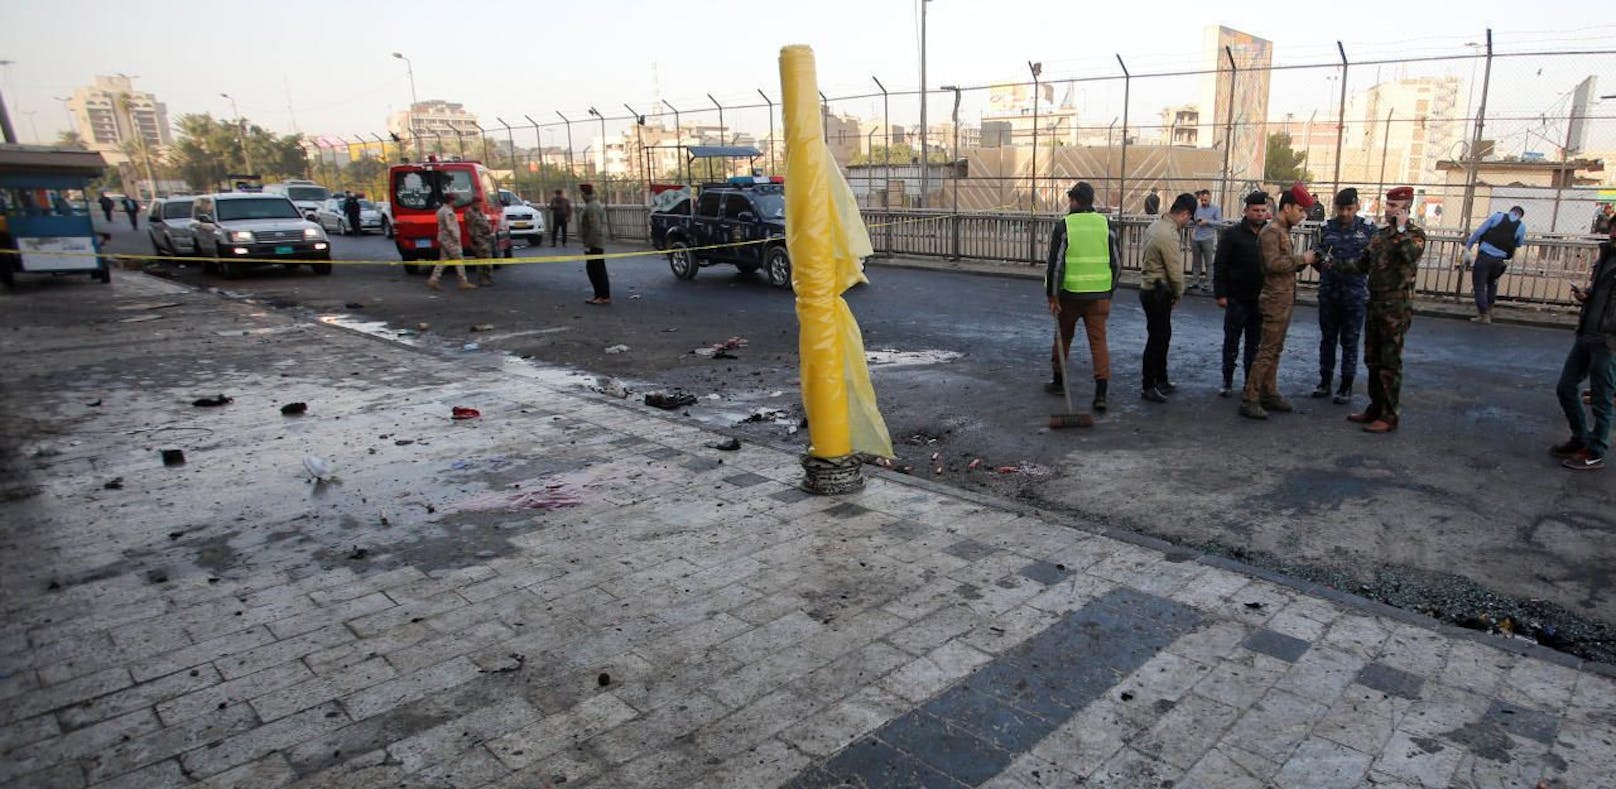 Sicherheitskräfte untersuchen den Tatort nach gleich zwei Selbstmordanschlägen in Bagdad, Irak.